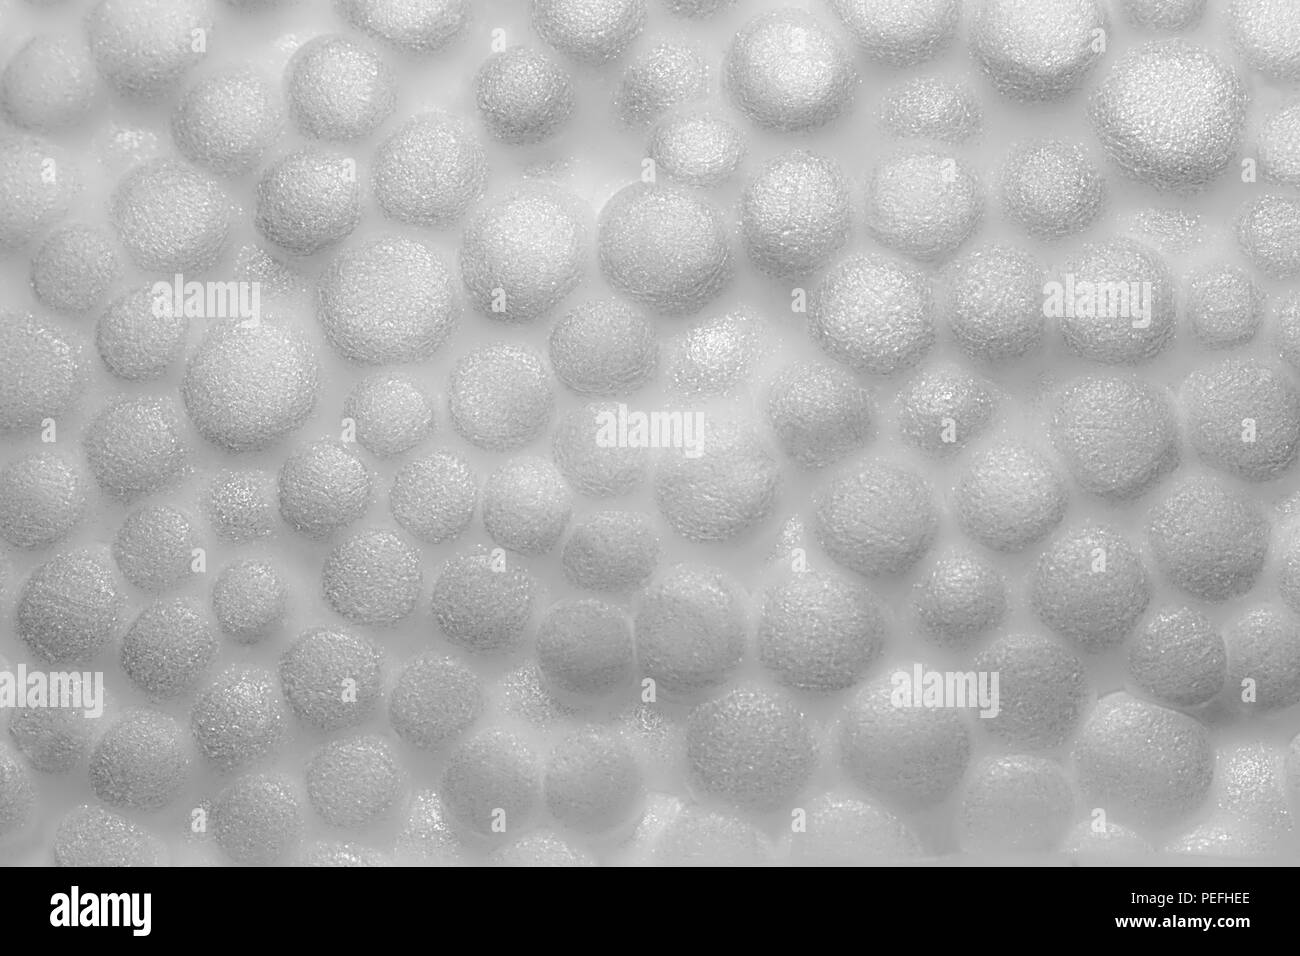 Le polystyrène, mousse de polystyrène blanc texture. Close-up macro-vision Banque D'Images